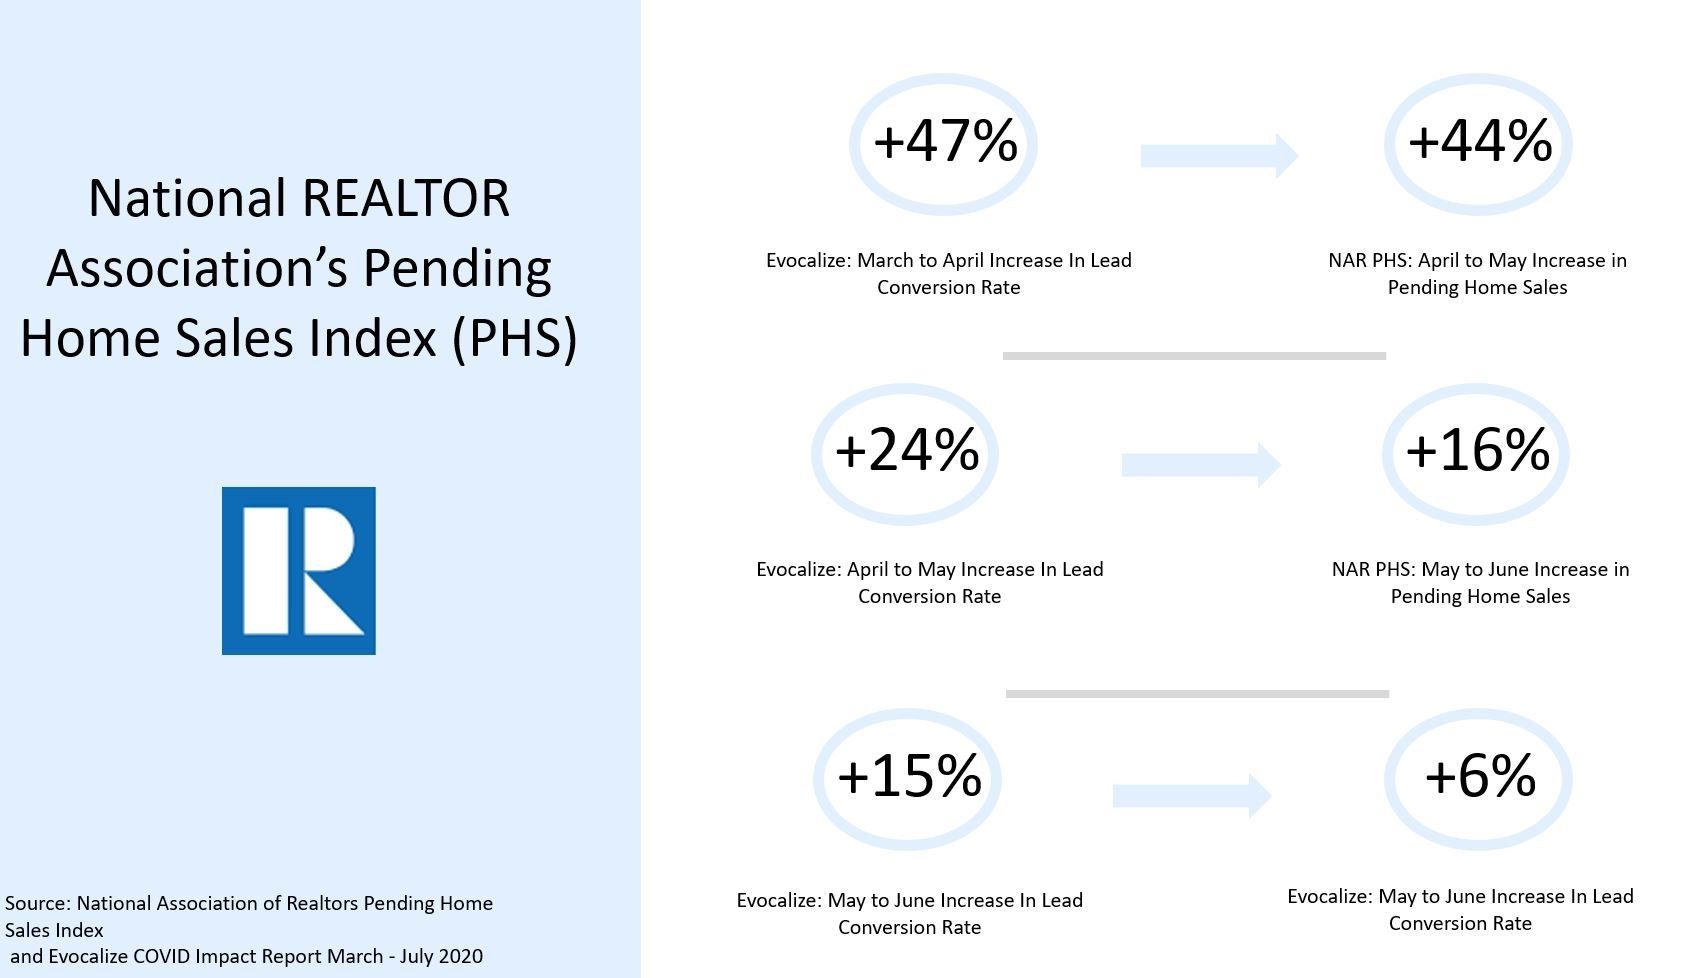 National REALTOR Association's Pending Home Sales Index changes